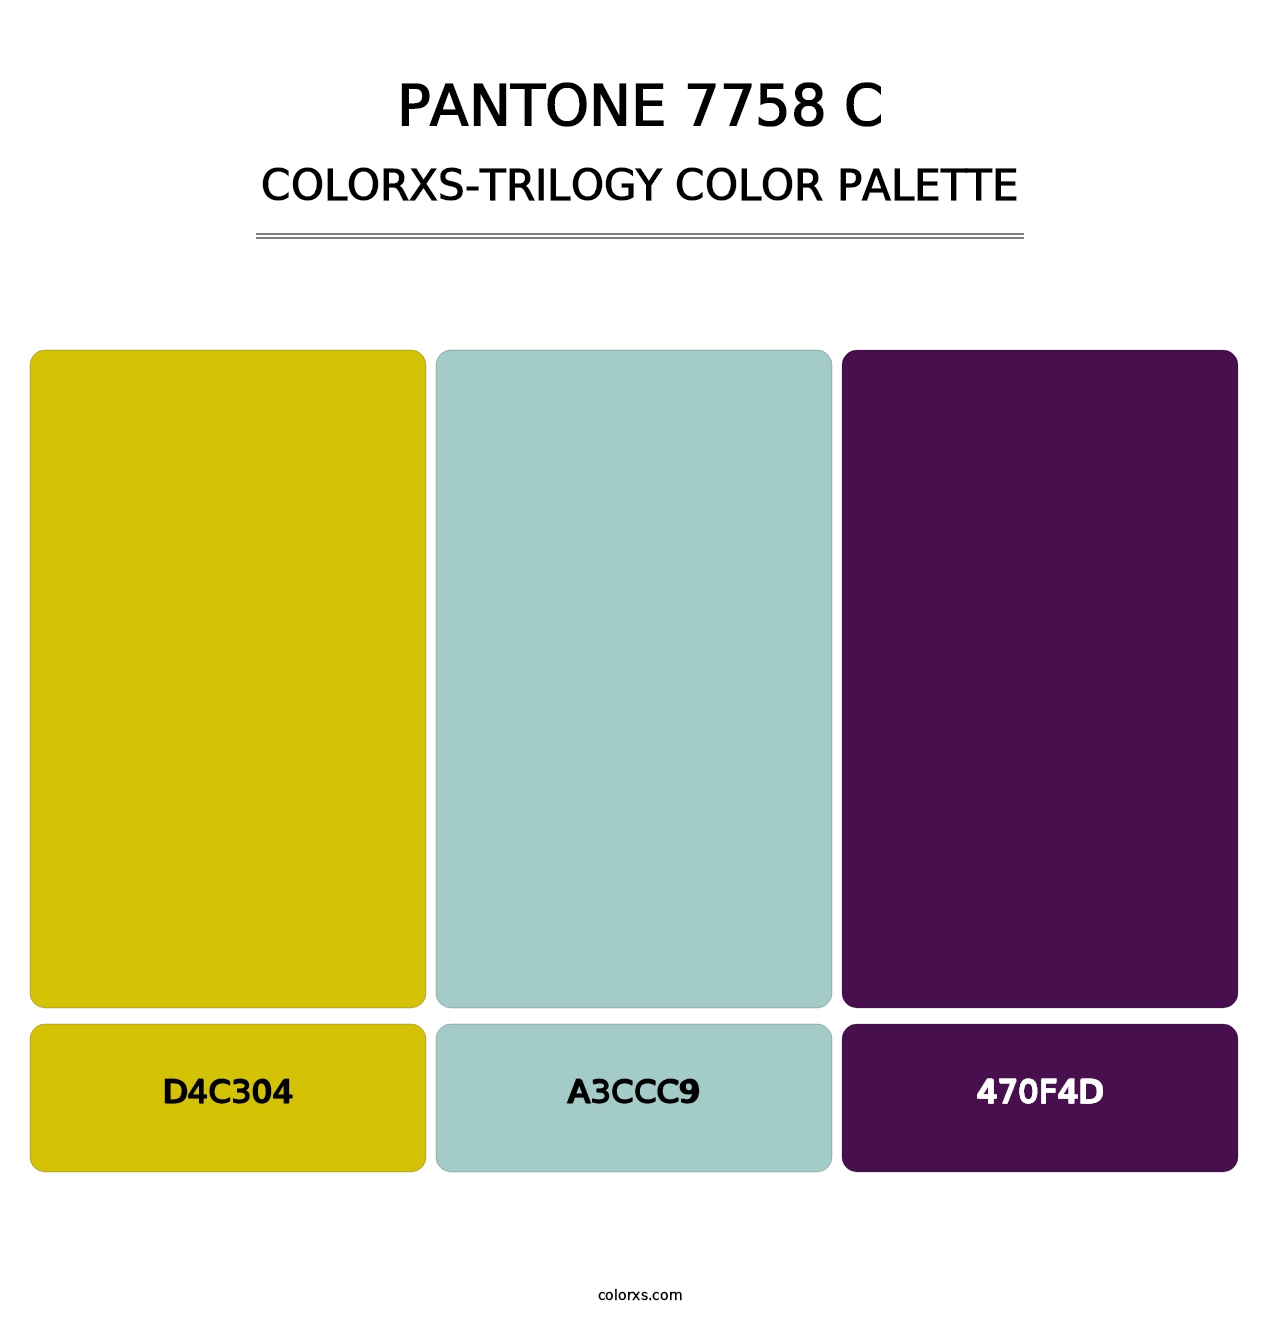 PANTONE 7758 C - Colorxs Trilogy Palette